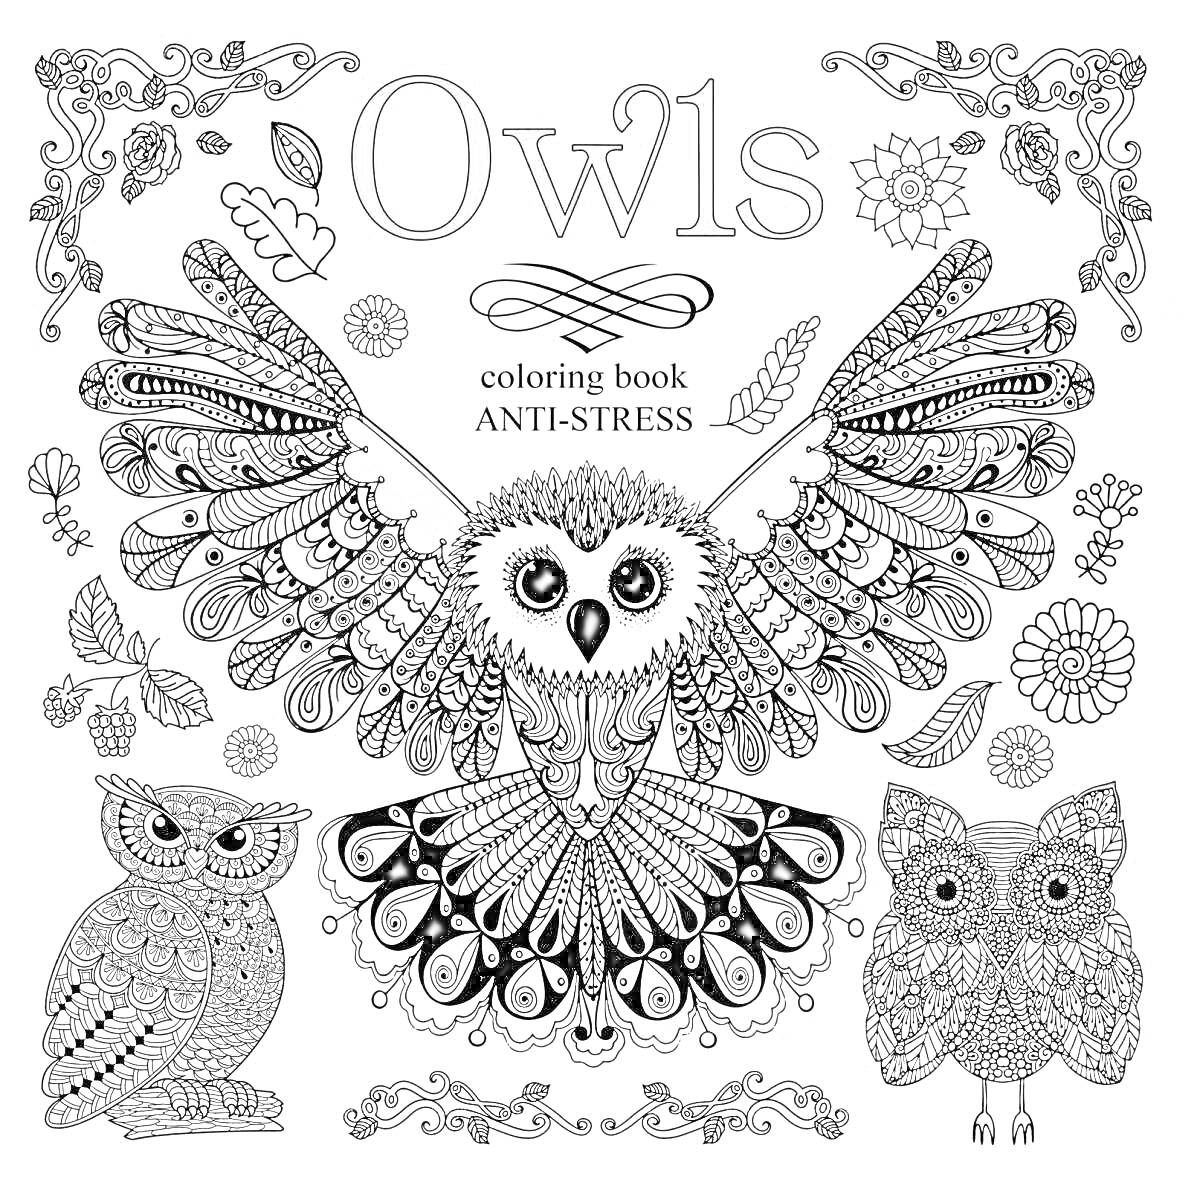 Раскраска Owls coloring book ANTI-STRESS - совы с распахнутыми крыльями, две сидящие совы, цветы, листья, узоры, декоративные элементы